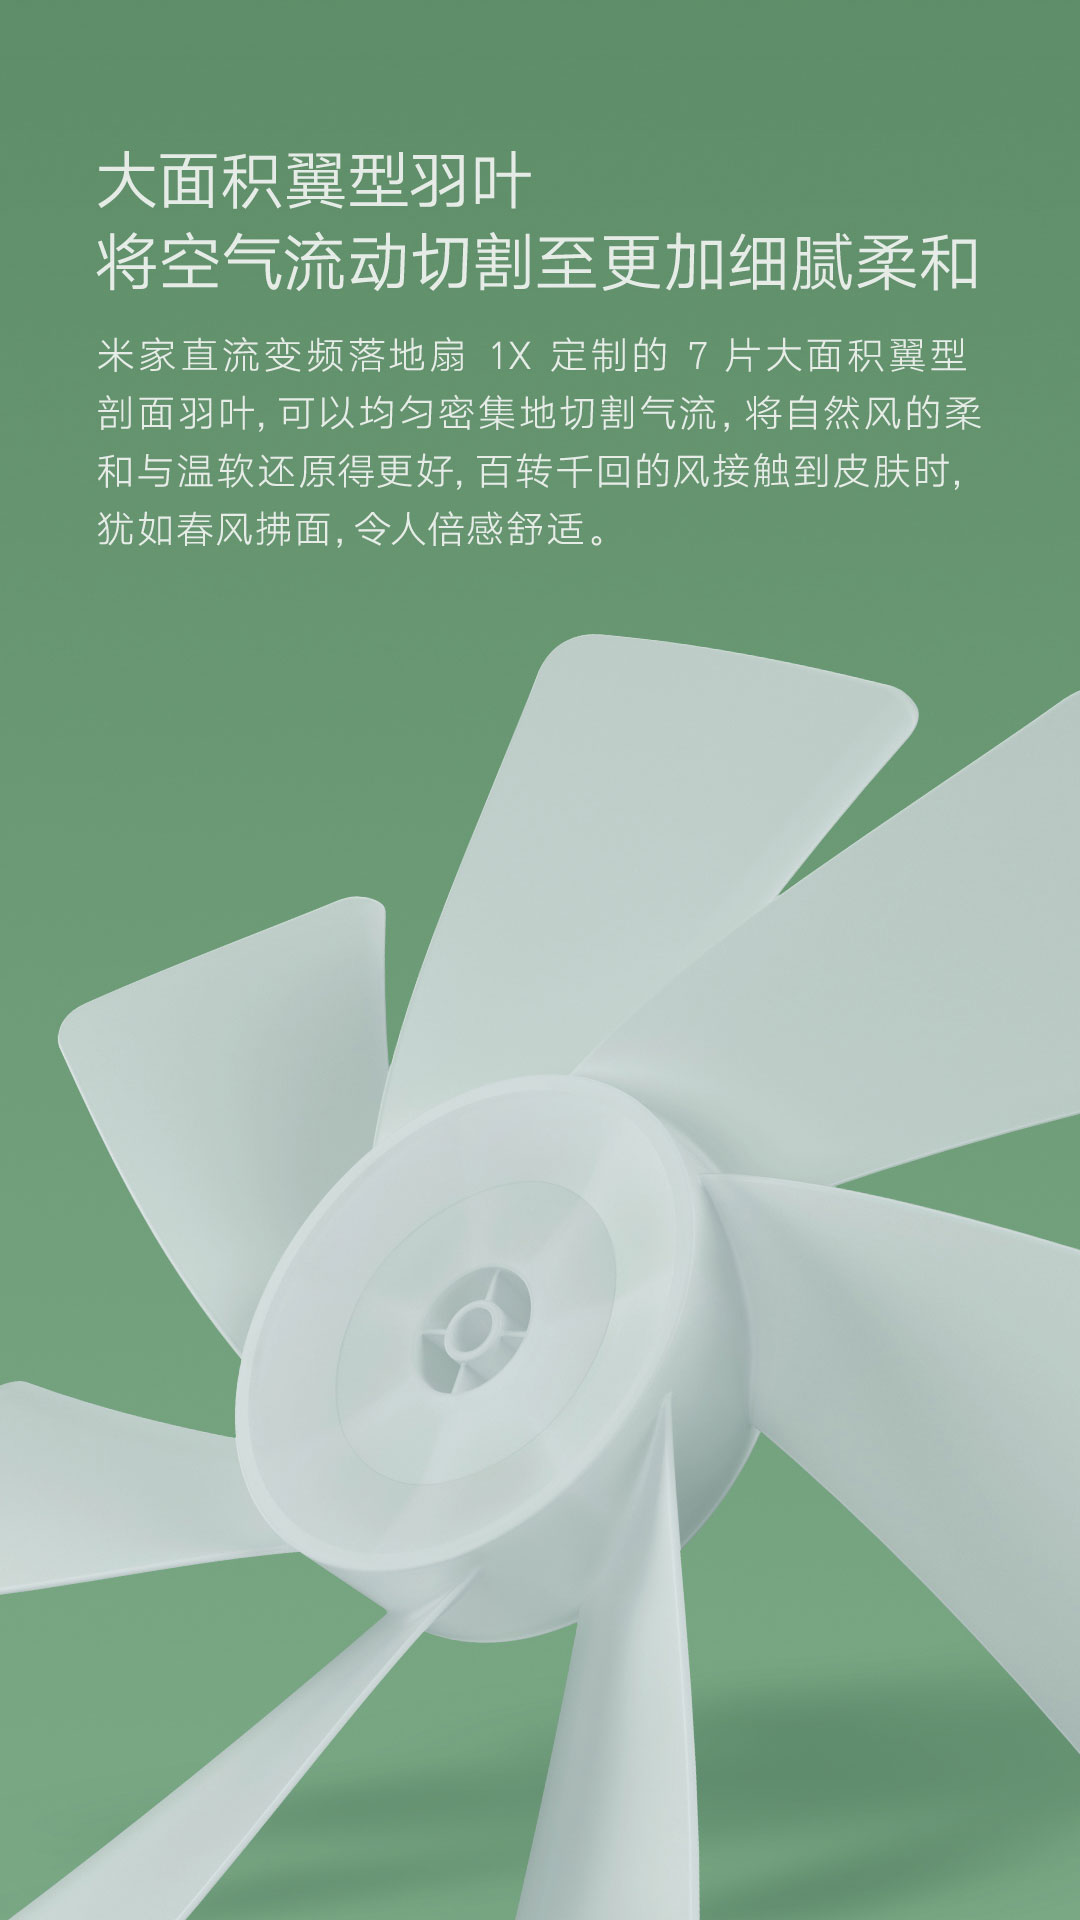 Xiaomi inverter fan